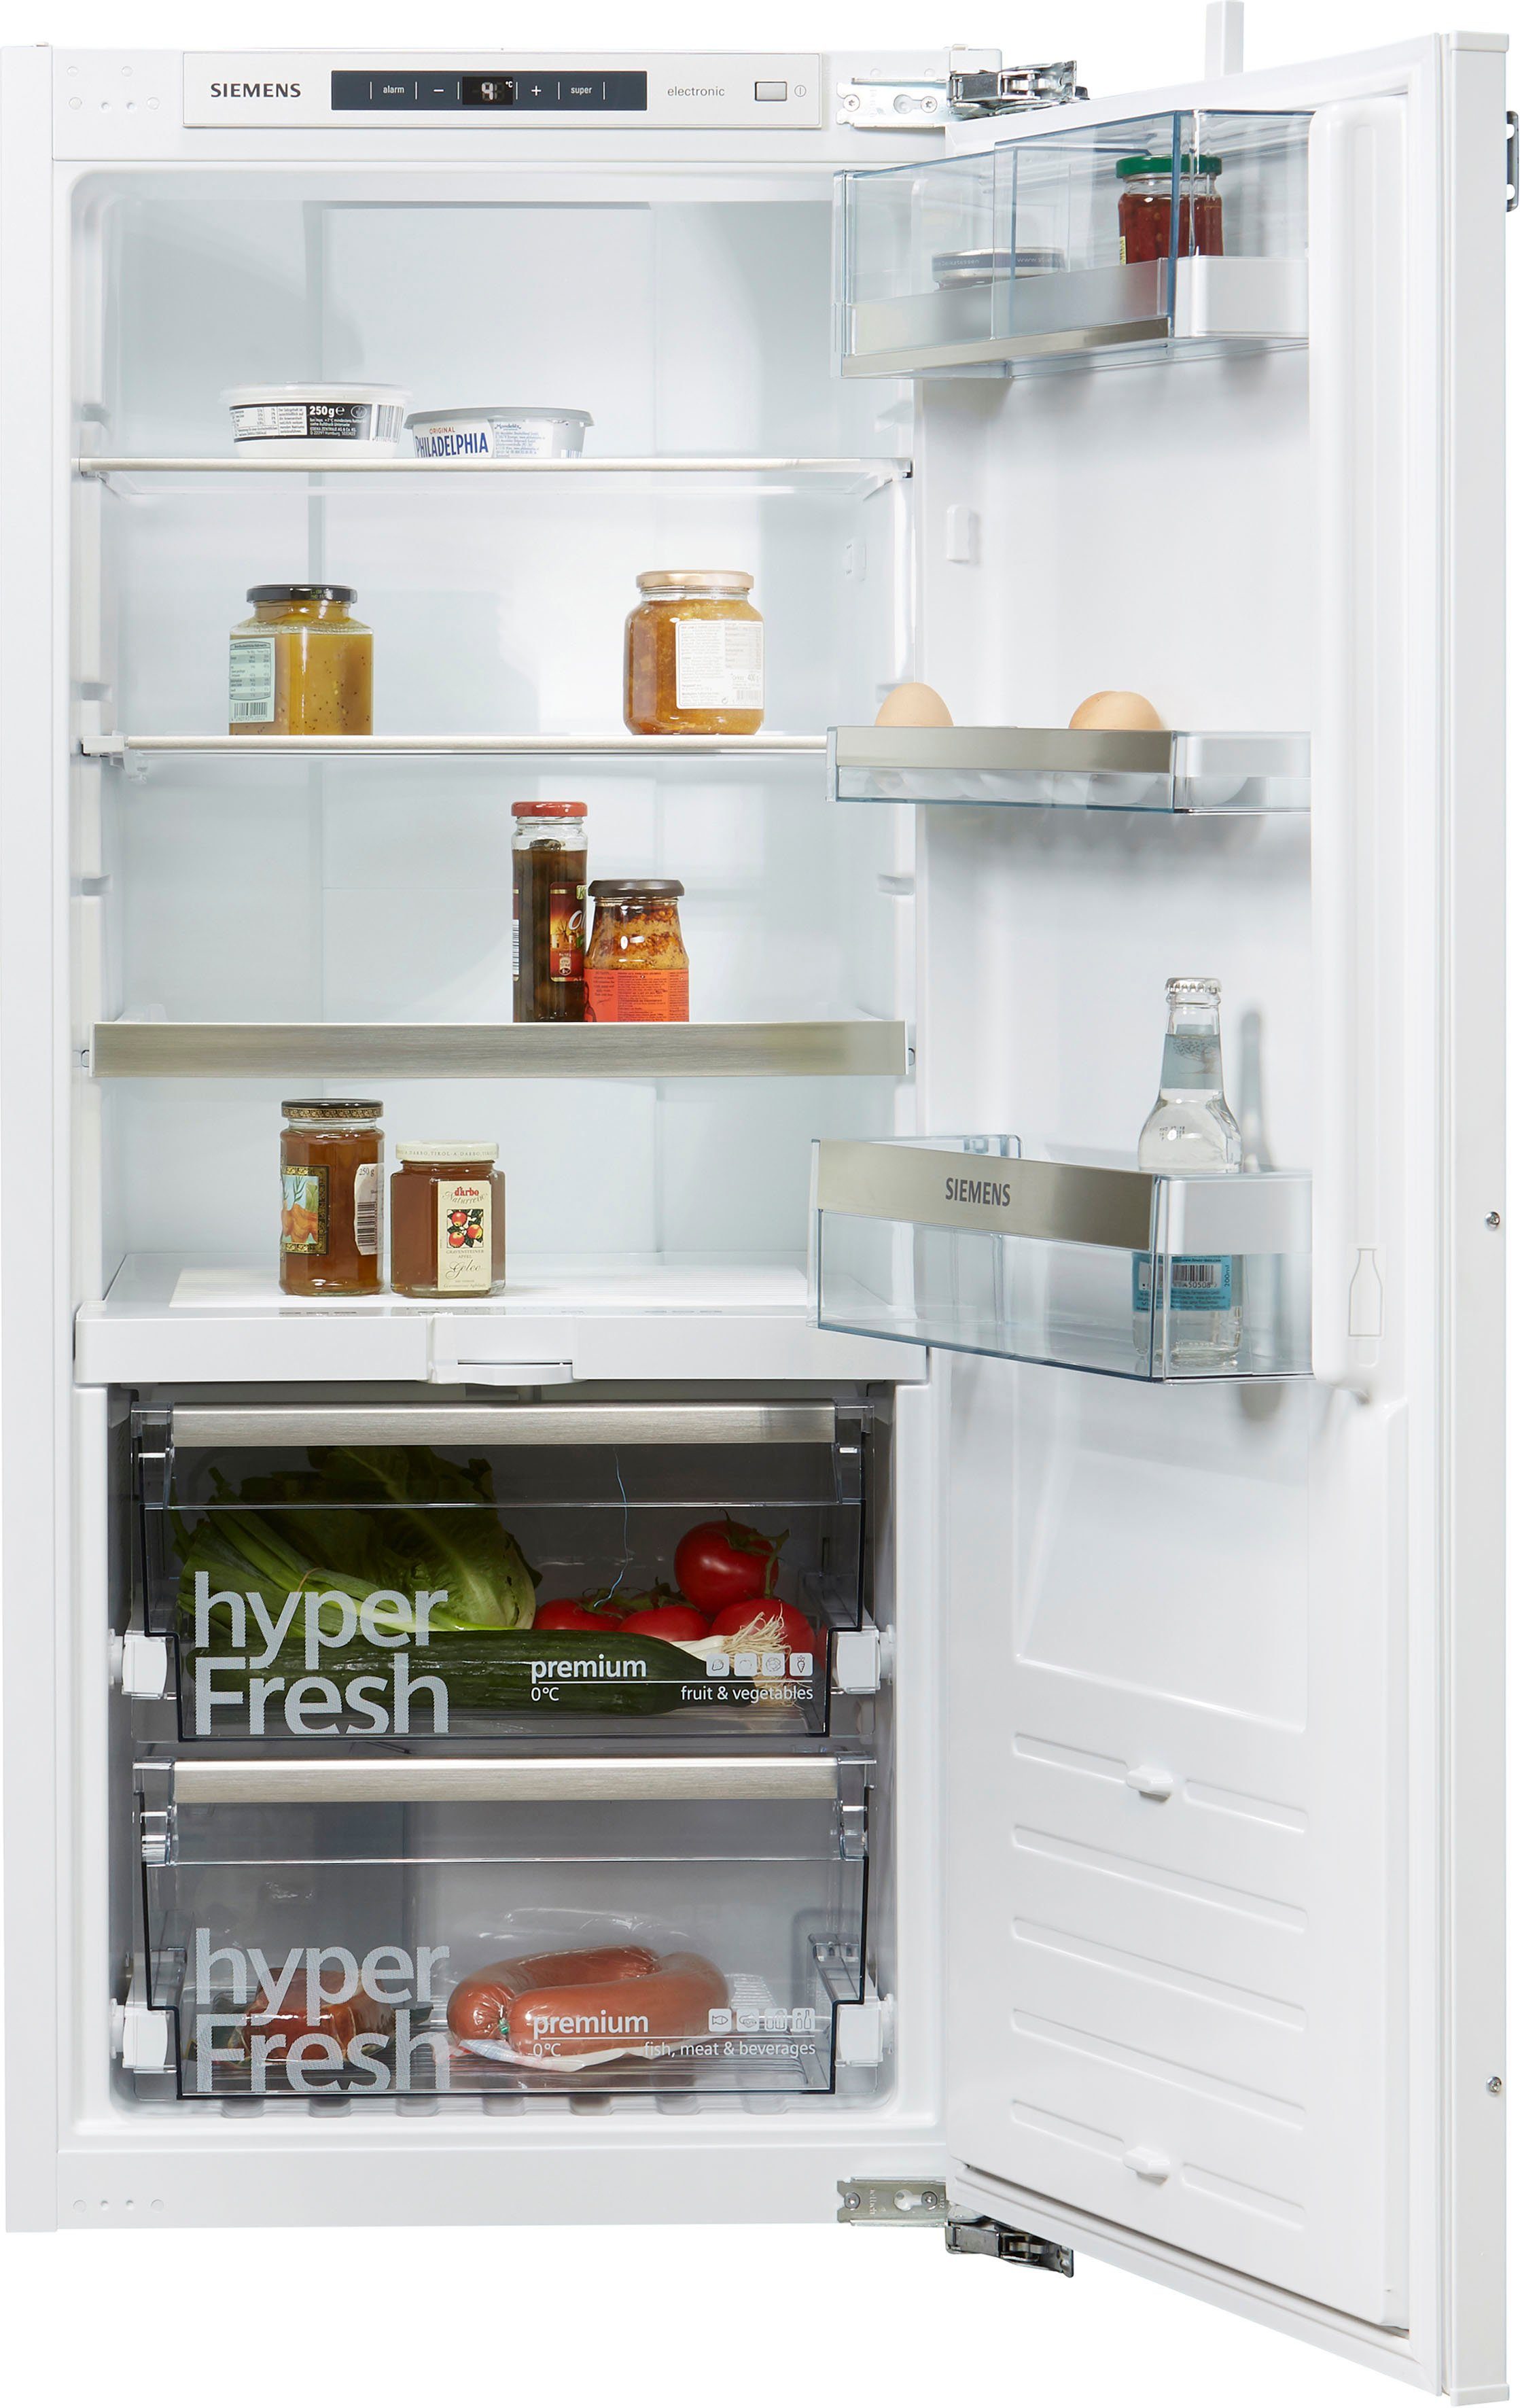 SIEMENS Einbaukühlschrank iQ700 KI41FADE0, 122,1 cm hoch, 55,8 cm breit  online kaufen | OTTO